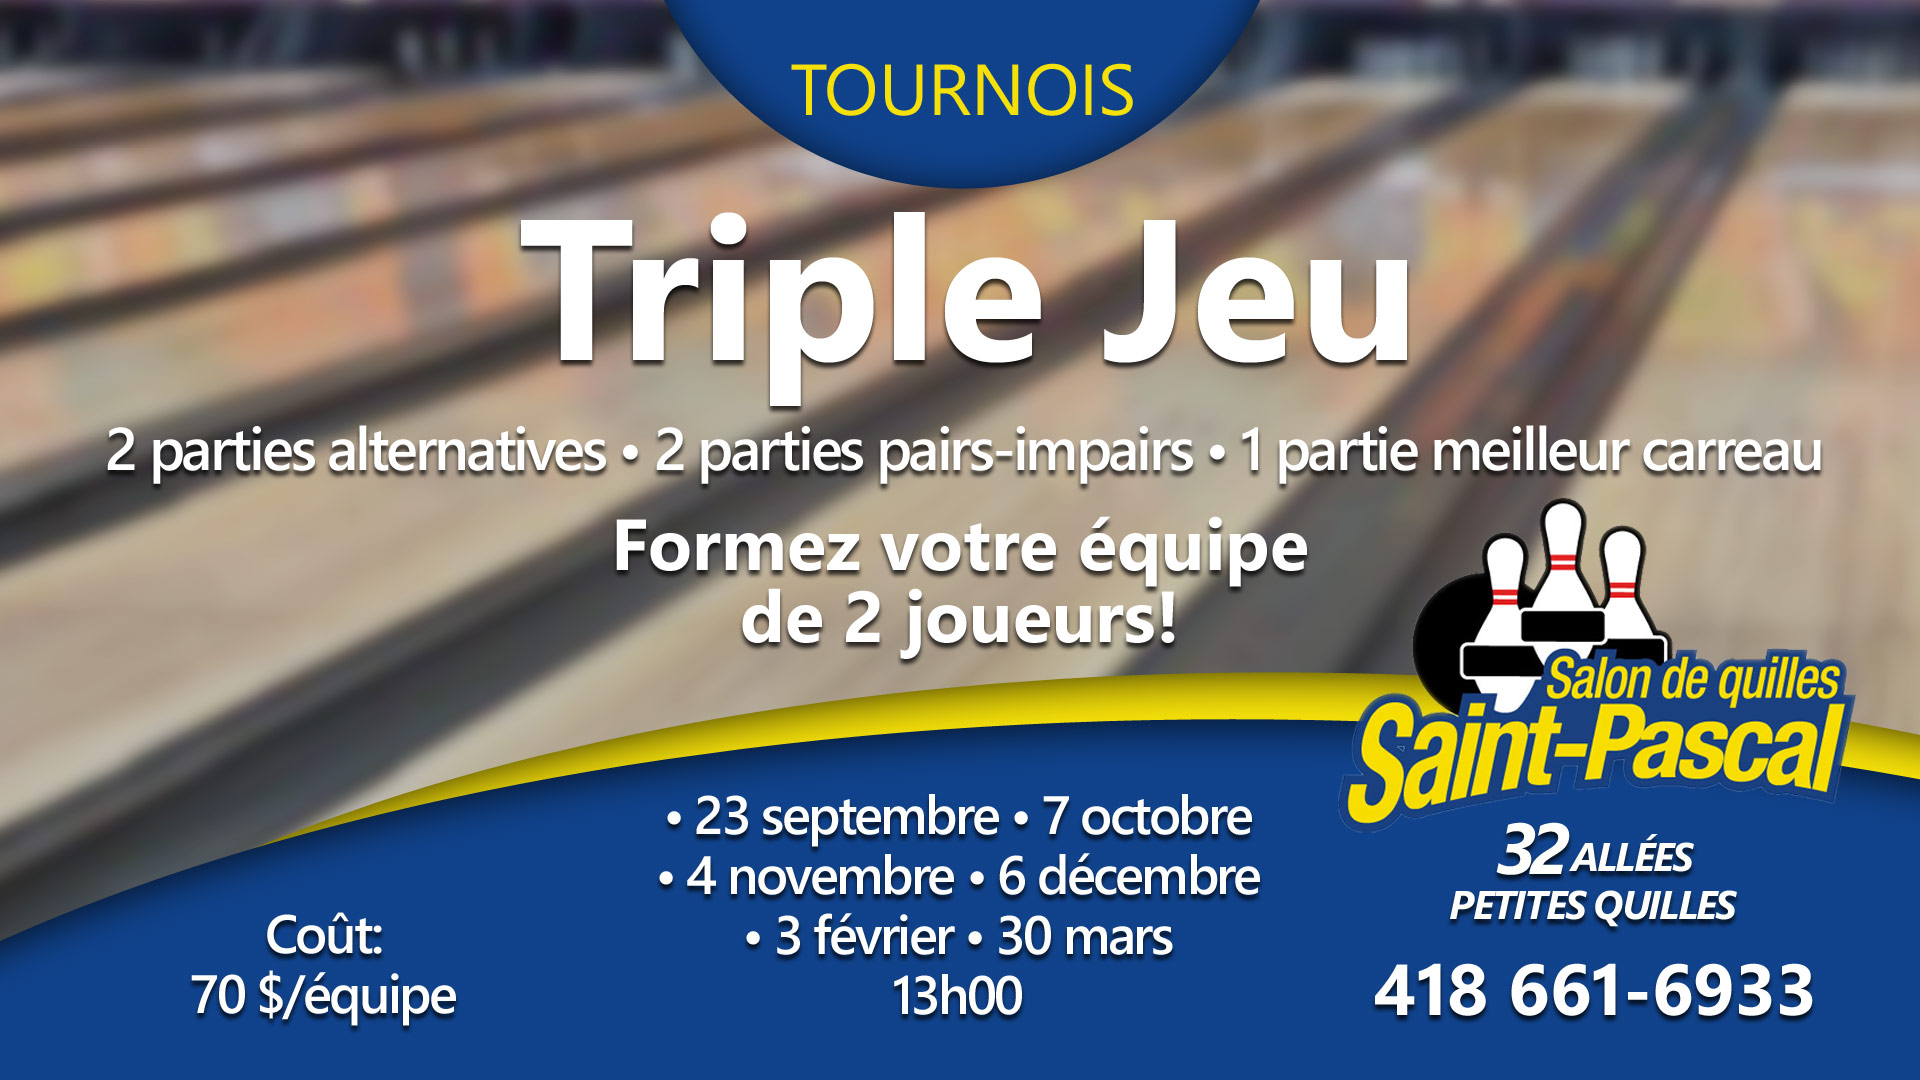 Tournois Triple Jeu St-Pascal